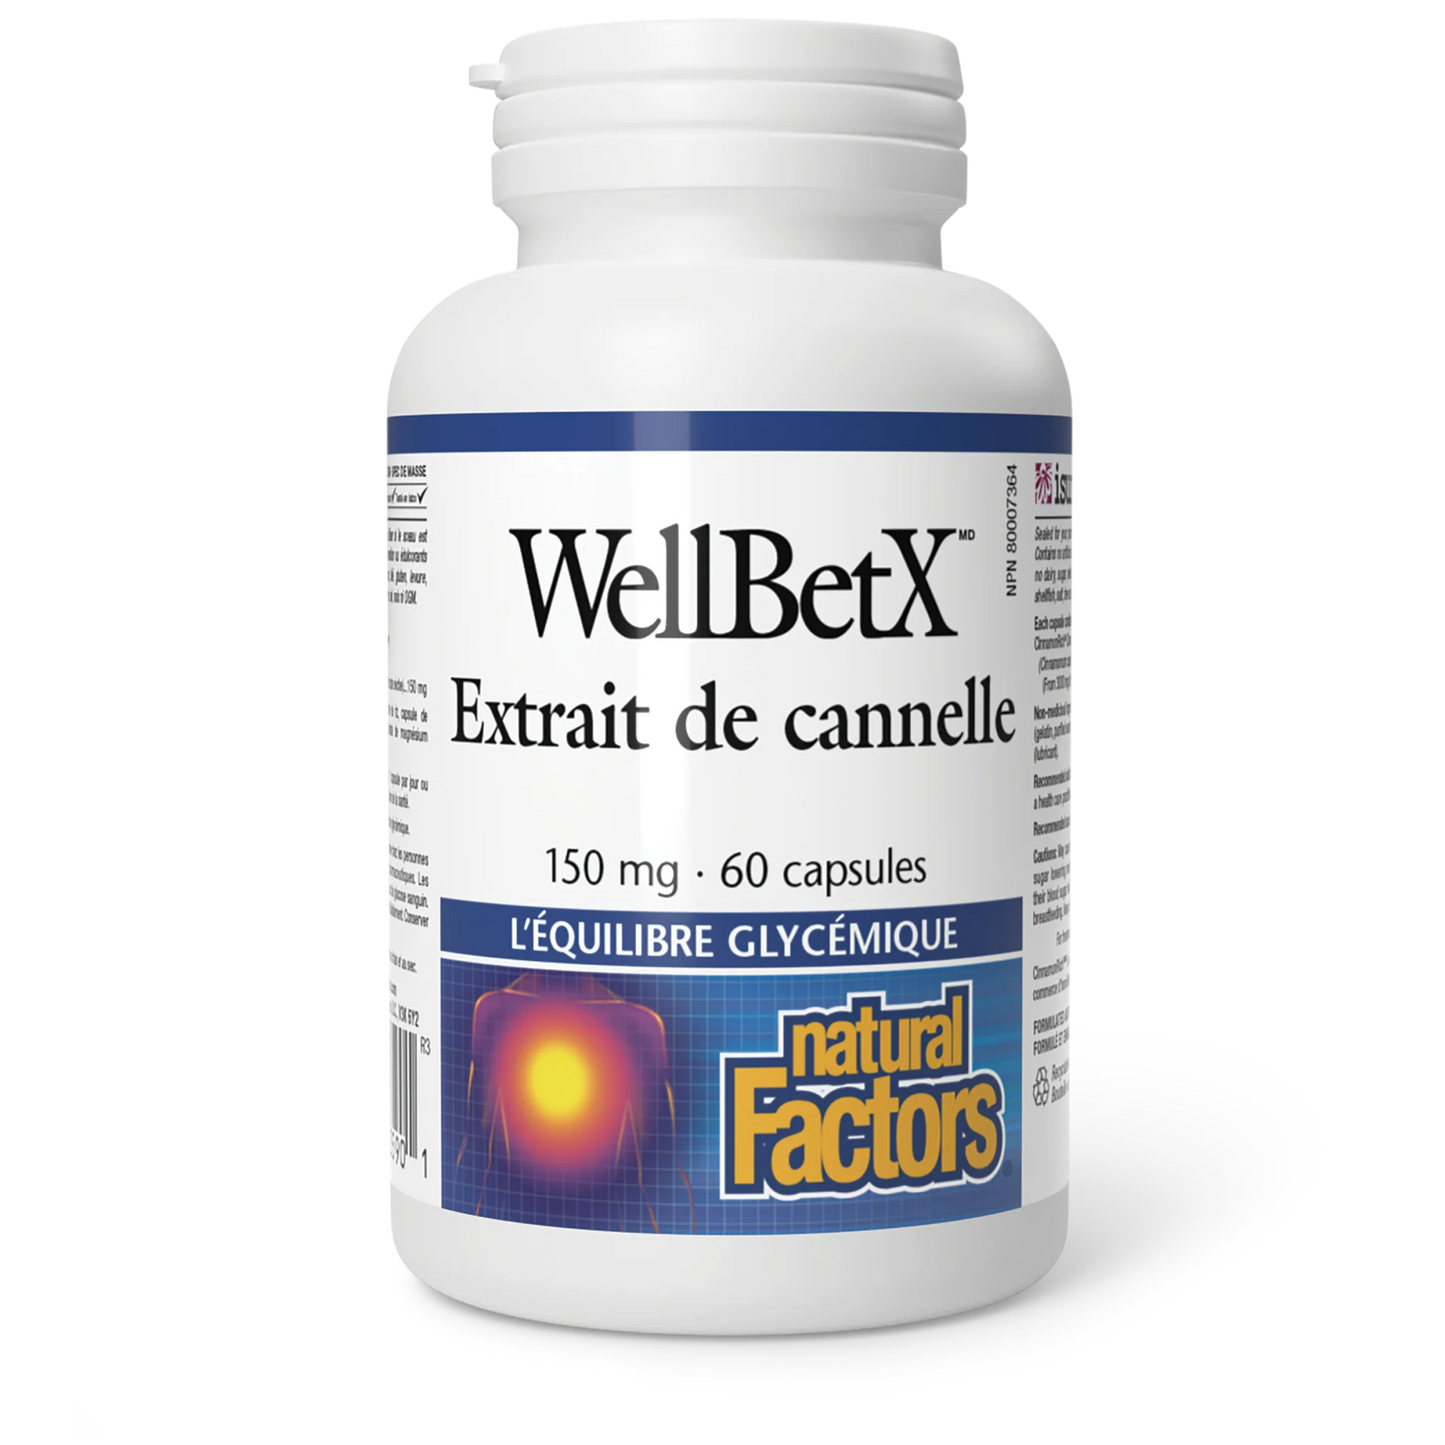 WellbetX Extrait de cannelle 150mg 60 capsules